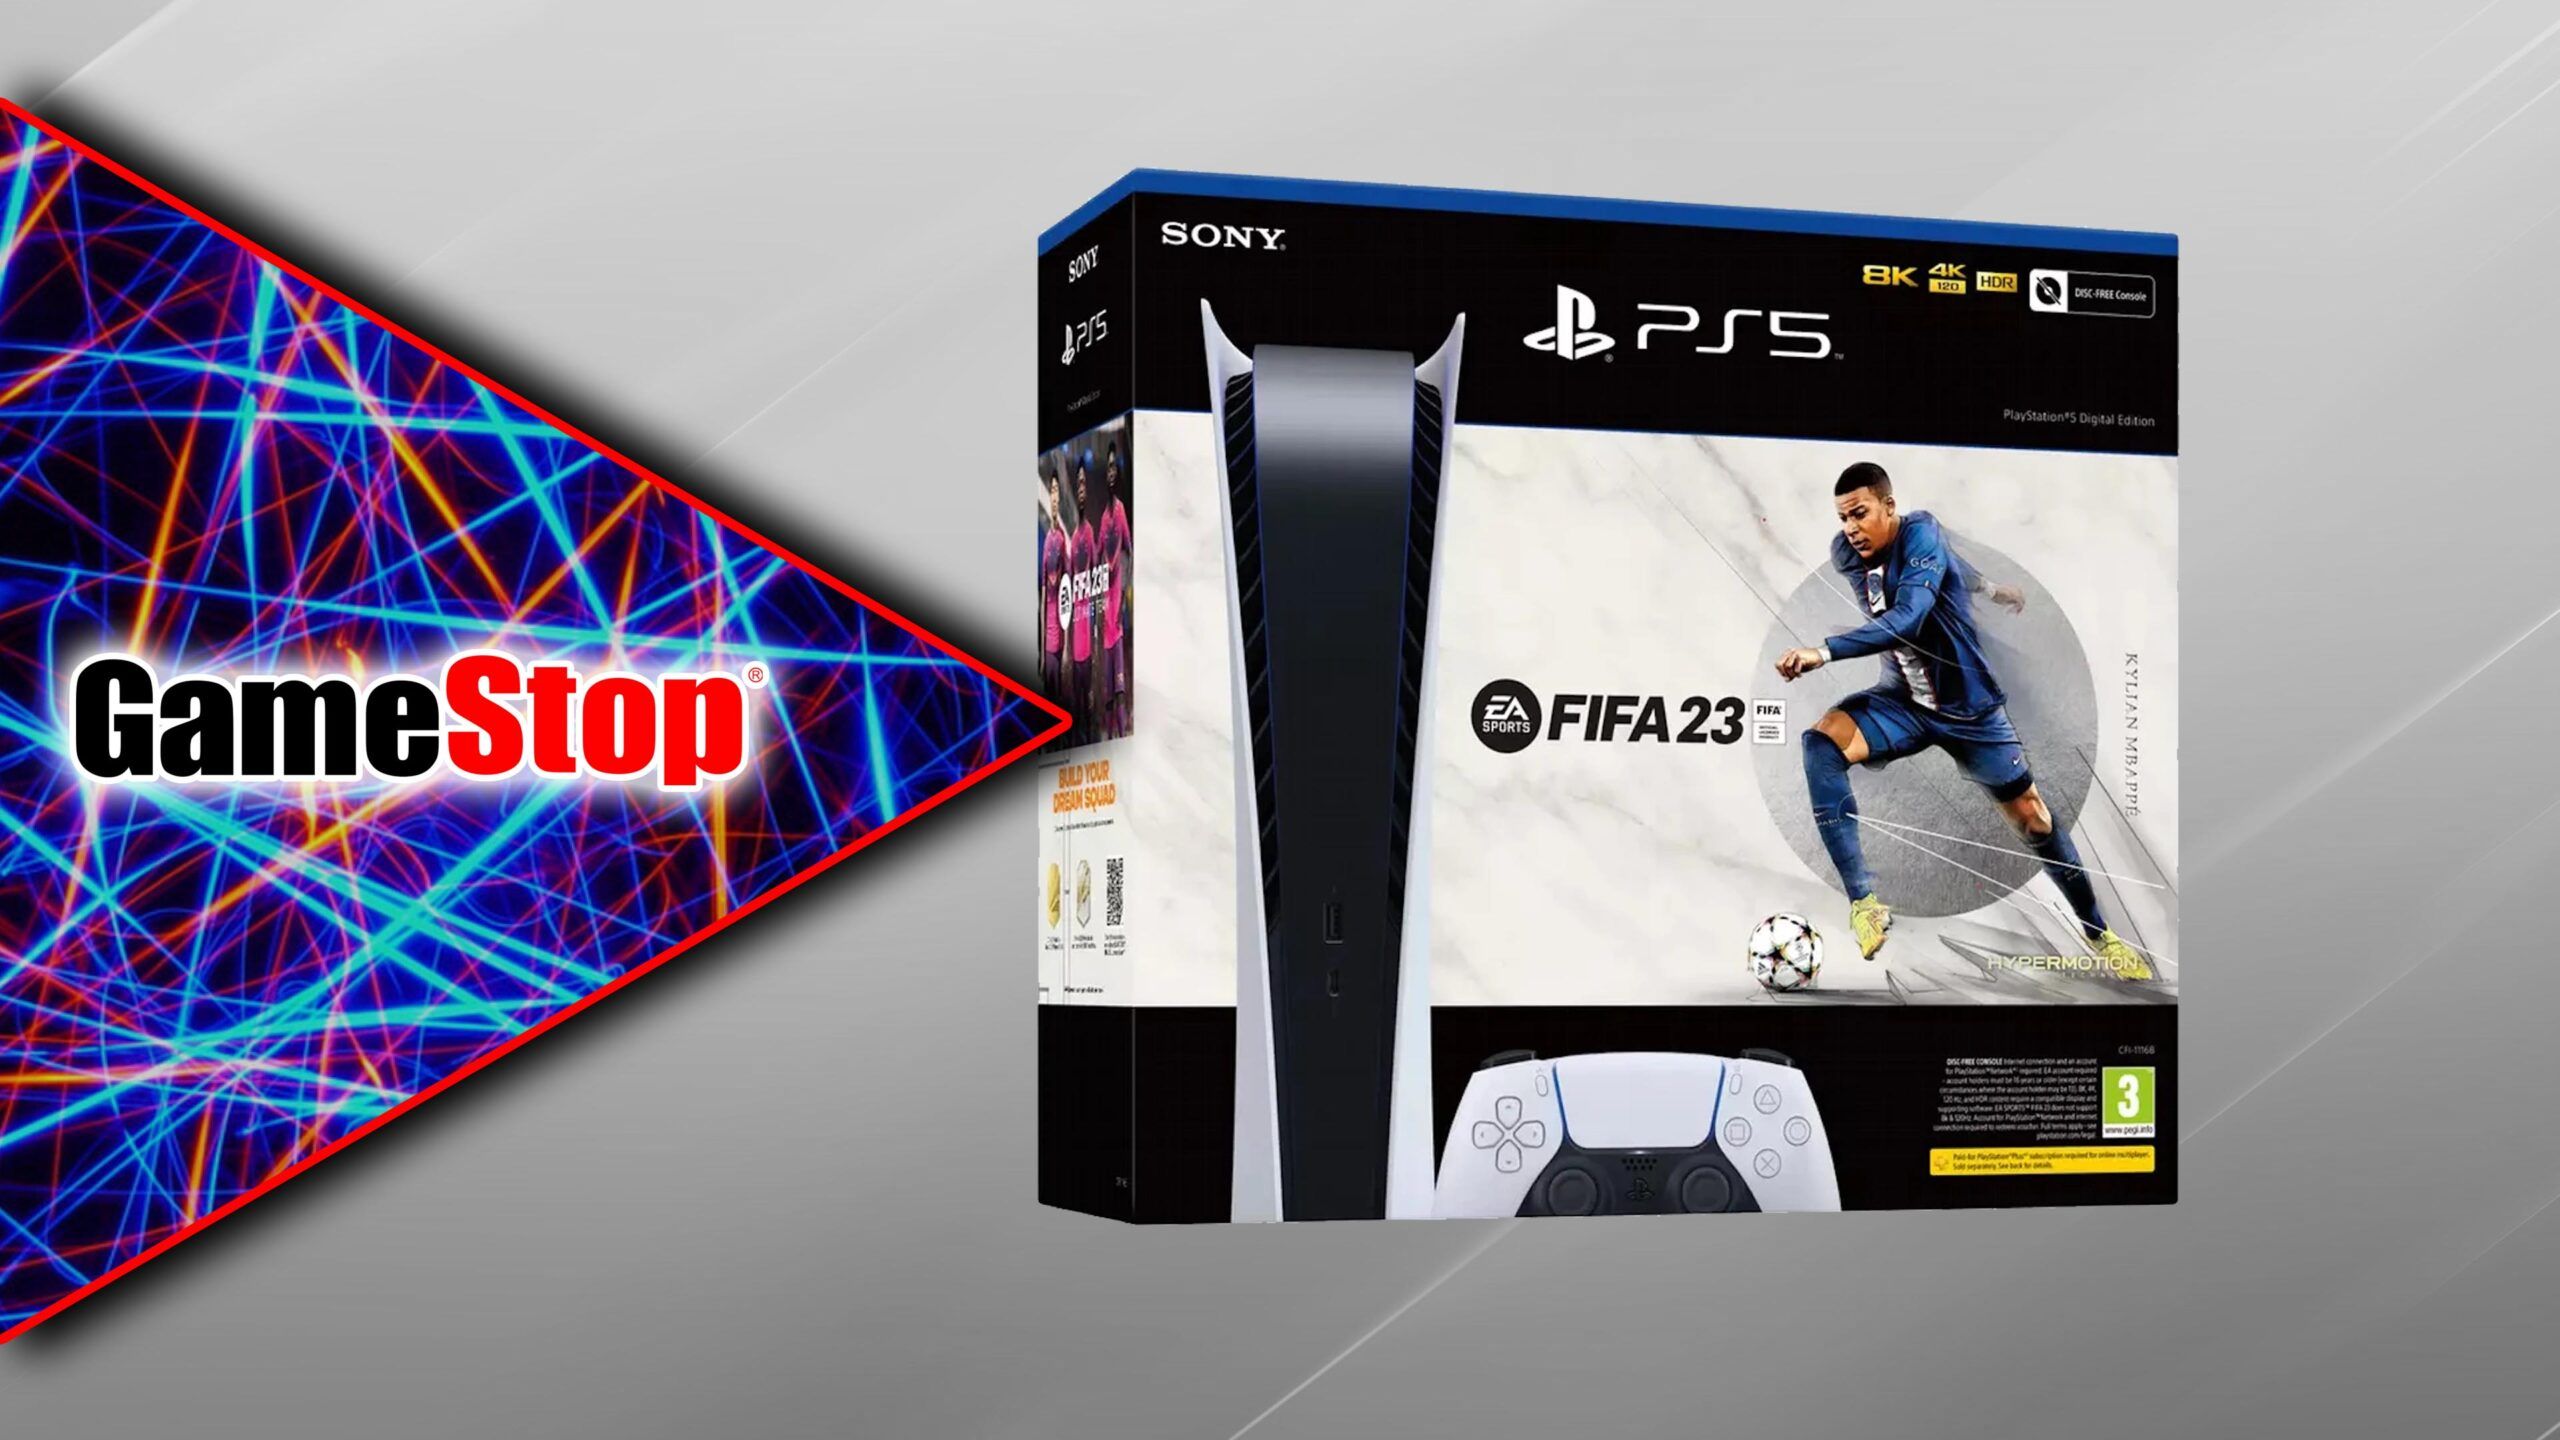 A edição digital do PlayStation 5 está disponível novamente com o FIFA 23 em um novo lançamento da GameStop esta semana